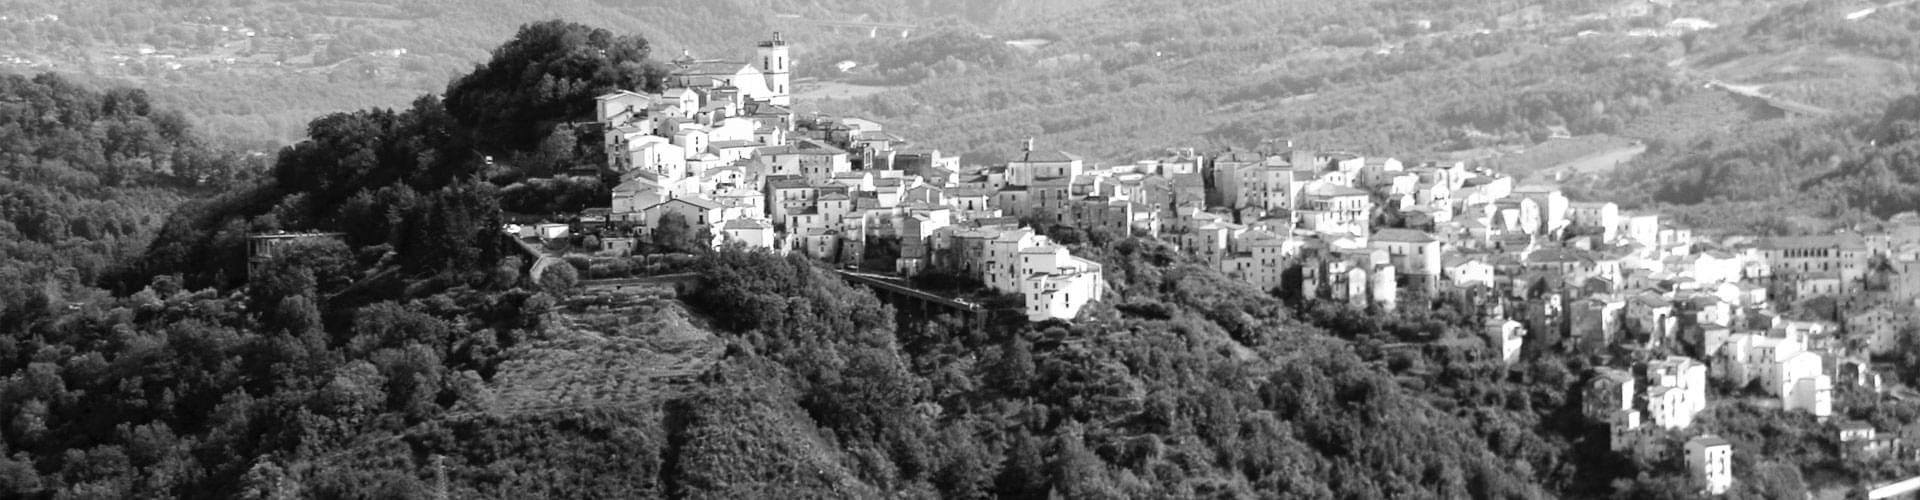 Een traditioneel Italiaans heuveldorp